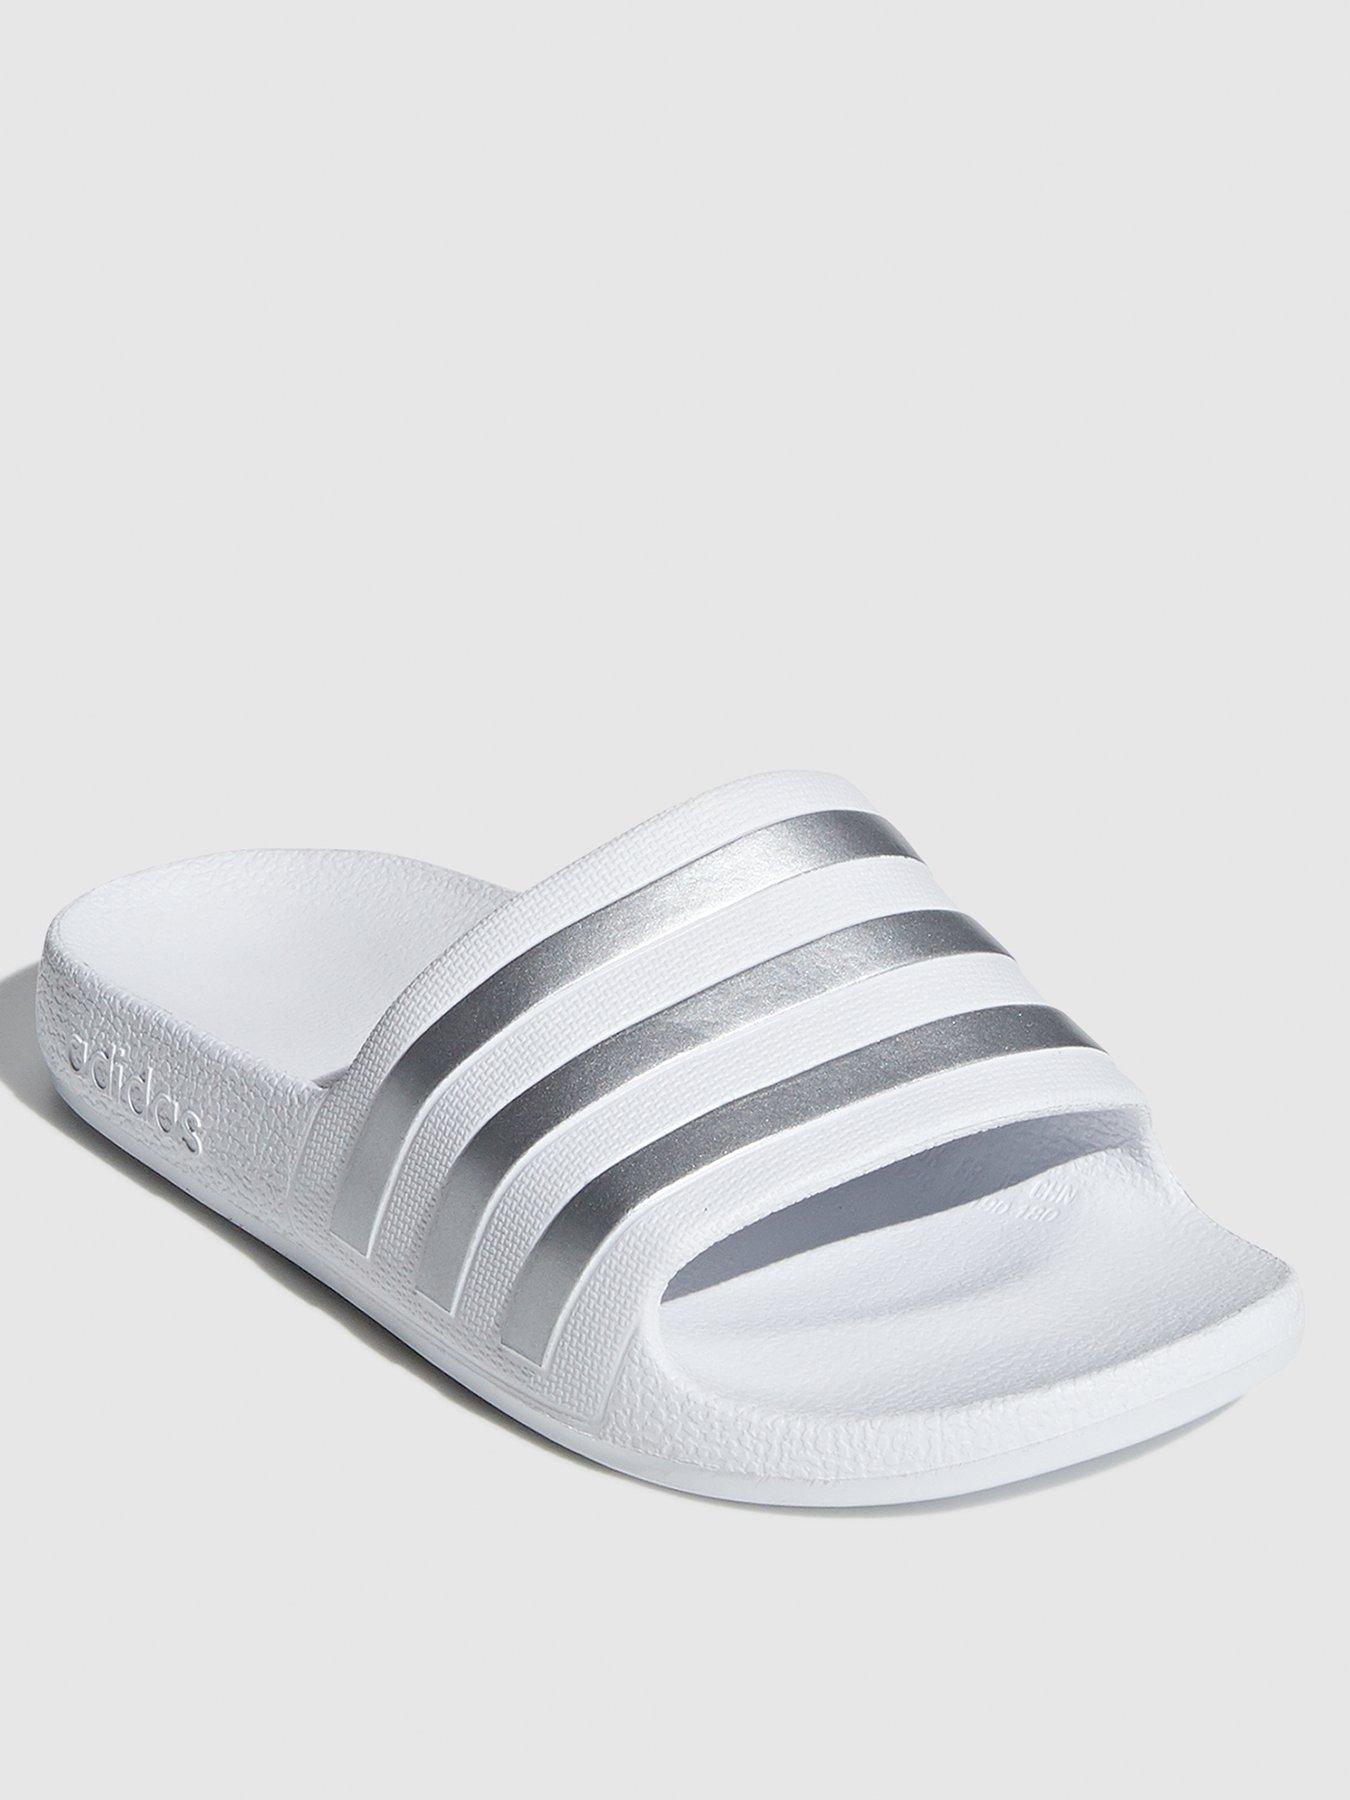 adidas white sliders